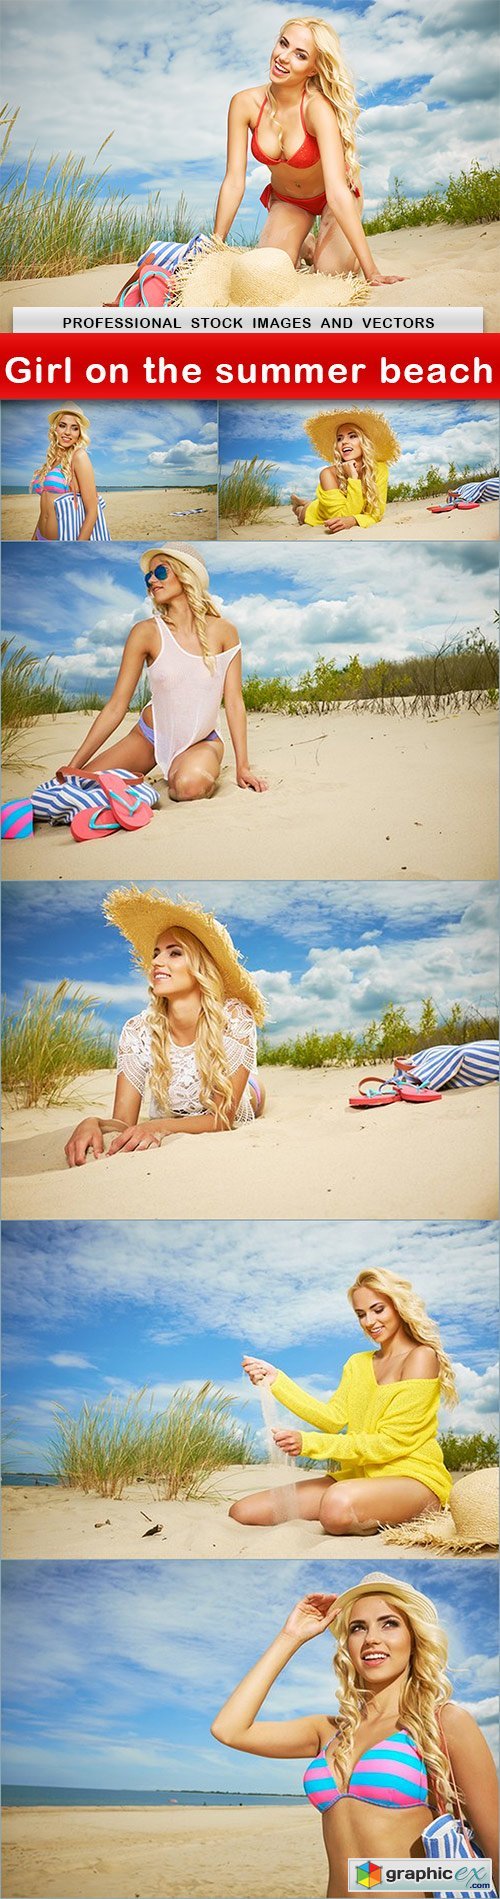 Girl on the summer beach - 7 UHQ JPEG